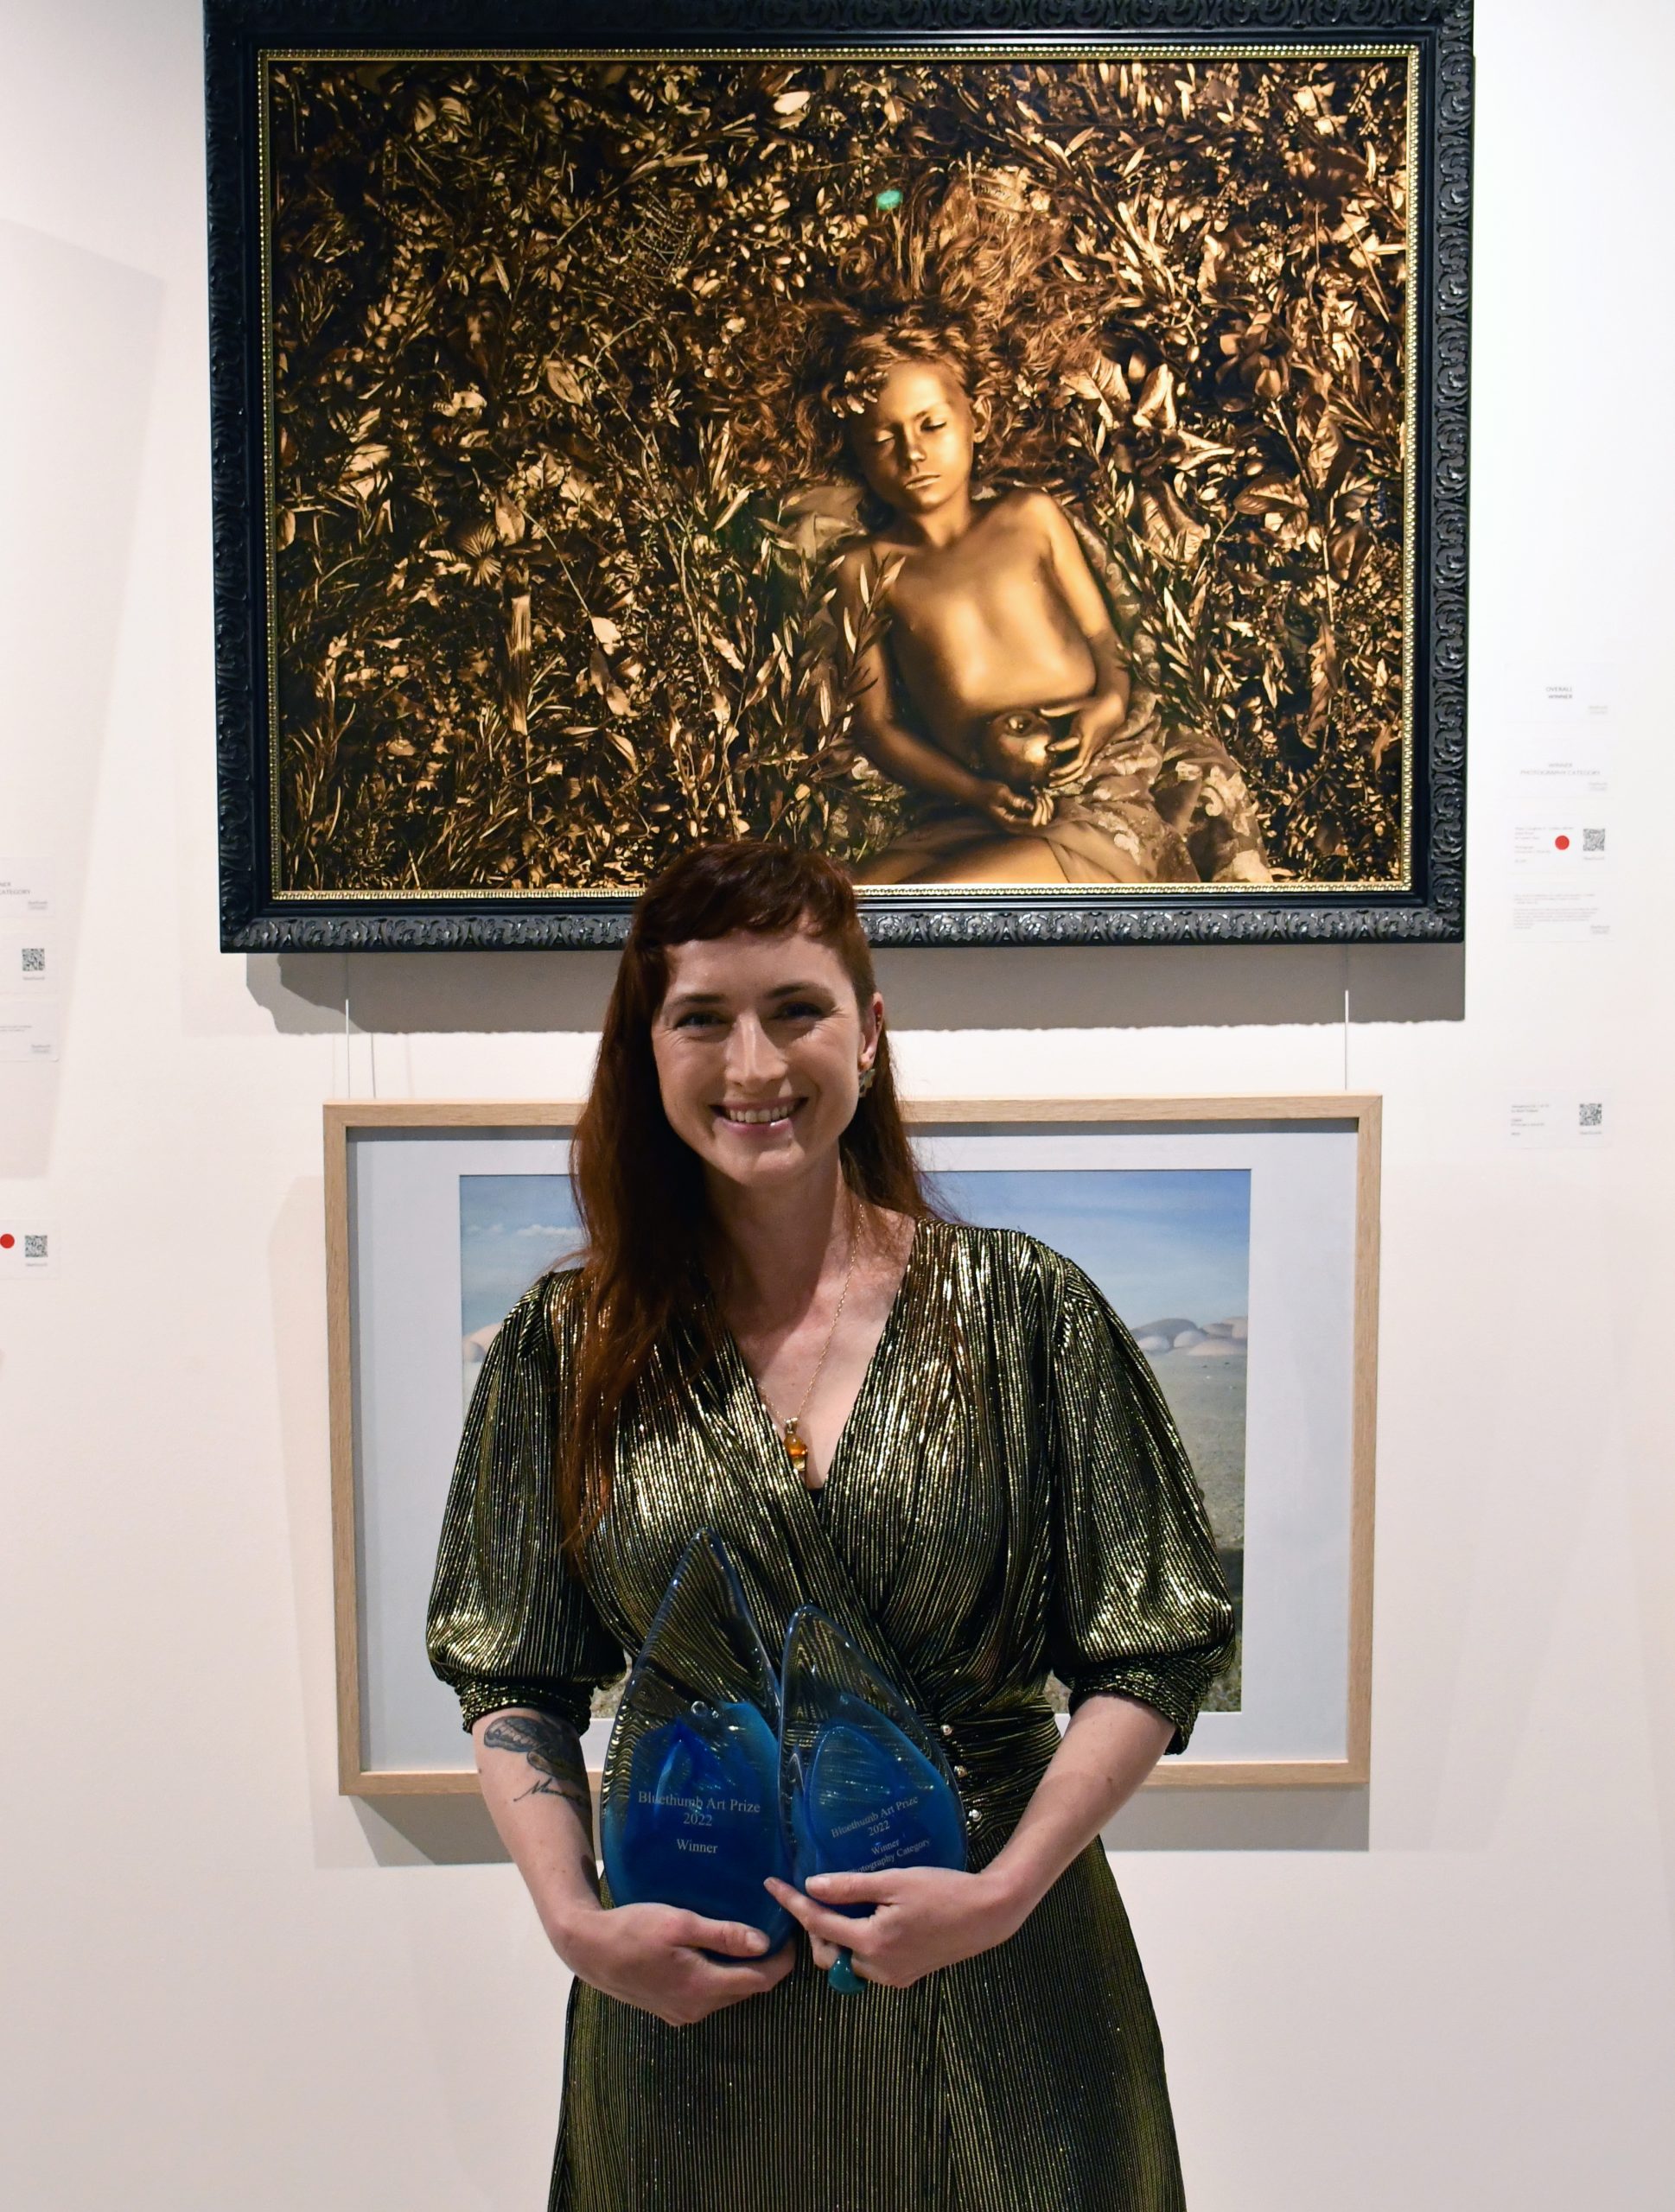 Bluethumb Art Prize 2022 overall winner Lauren Starr in front of her winning work, Midas' Daughter II.